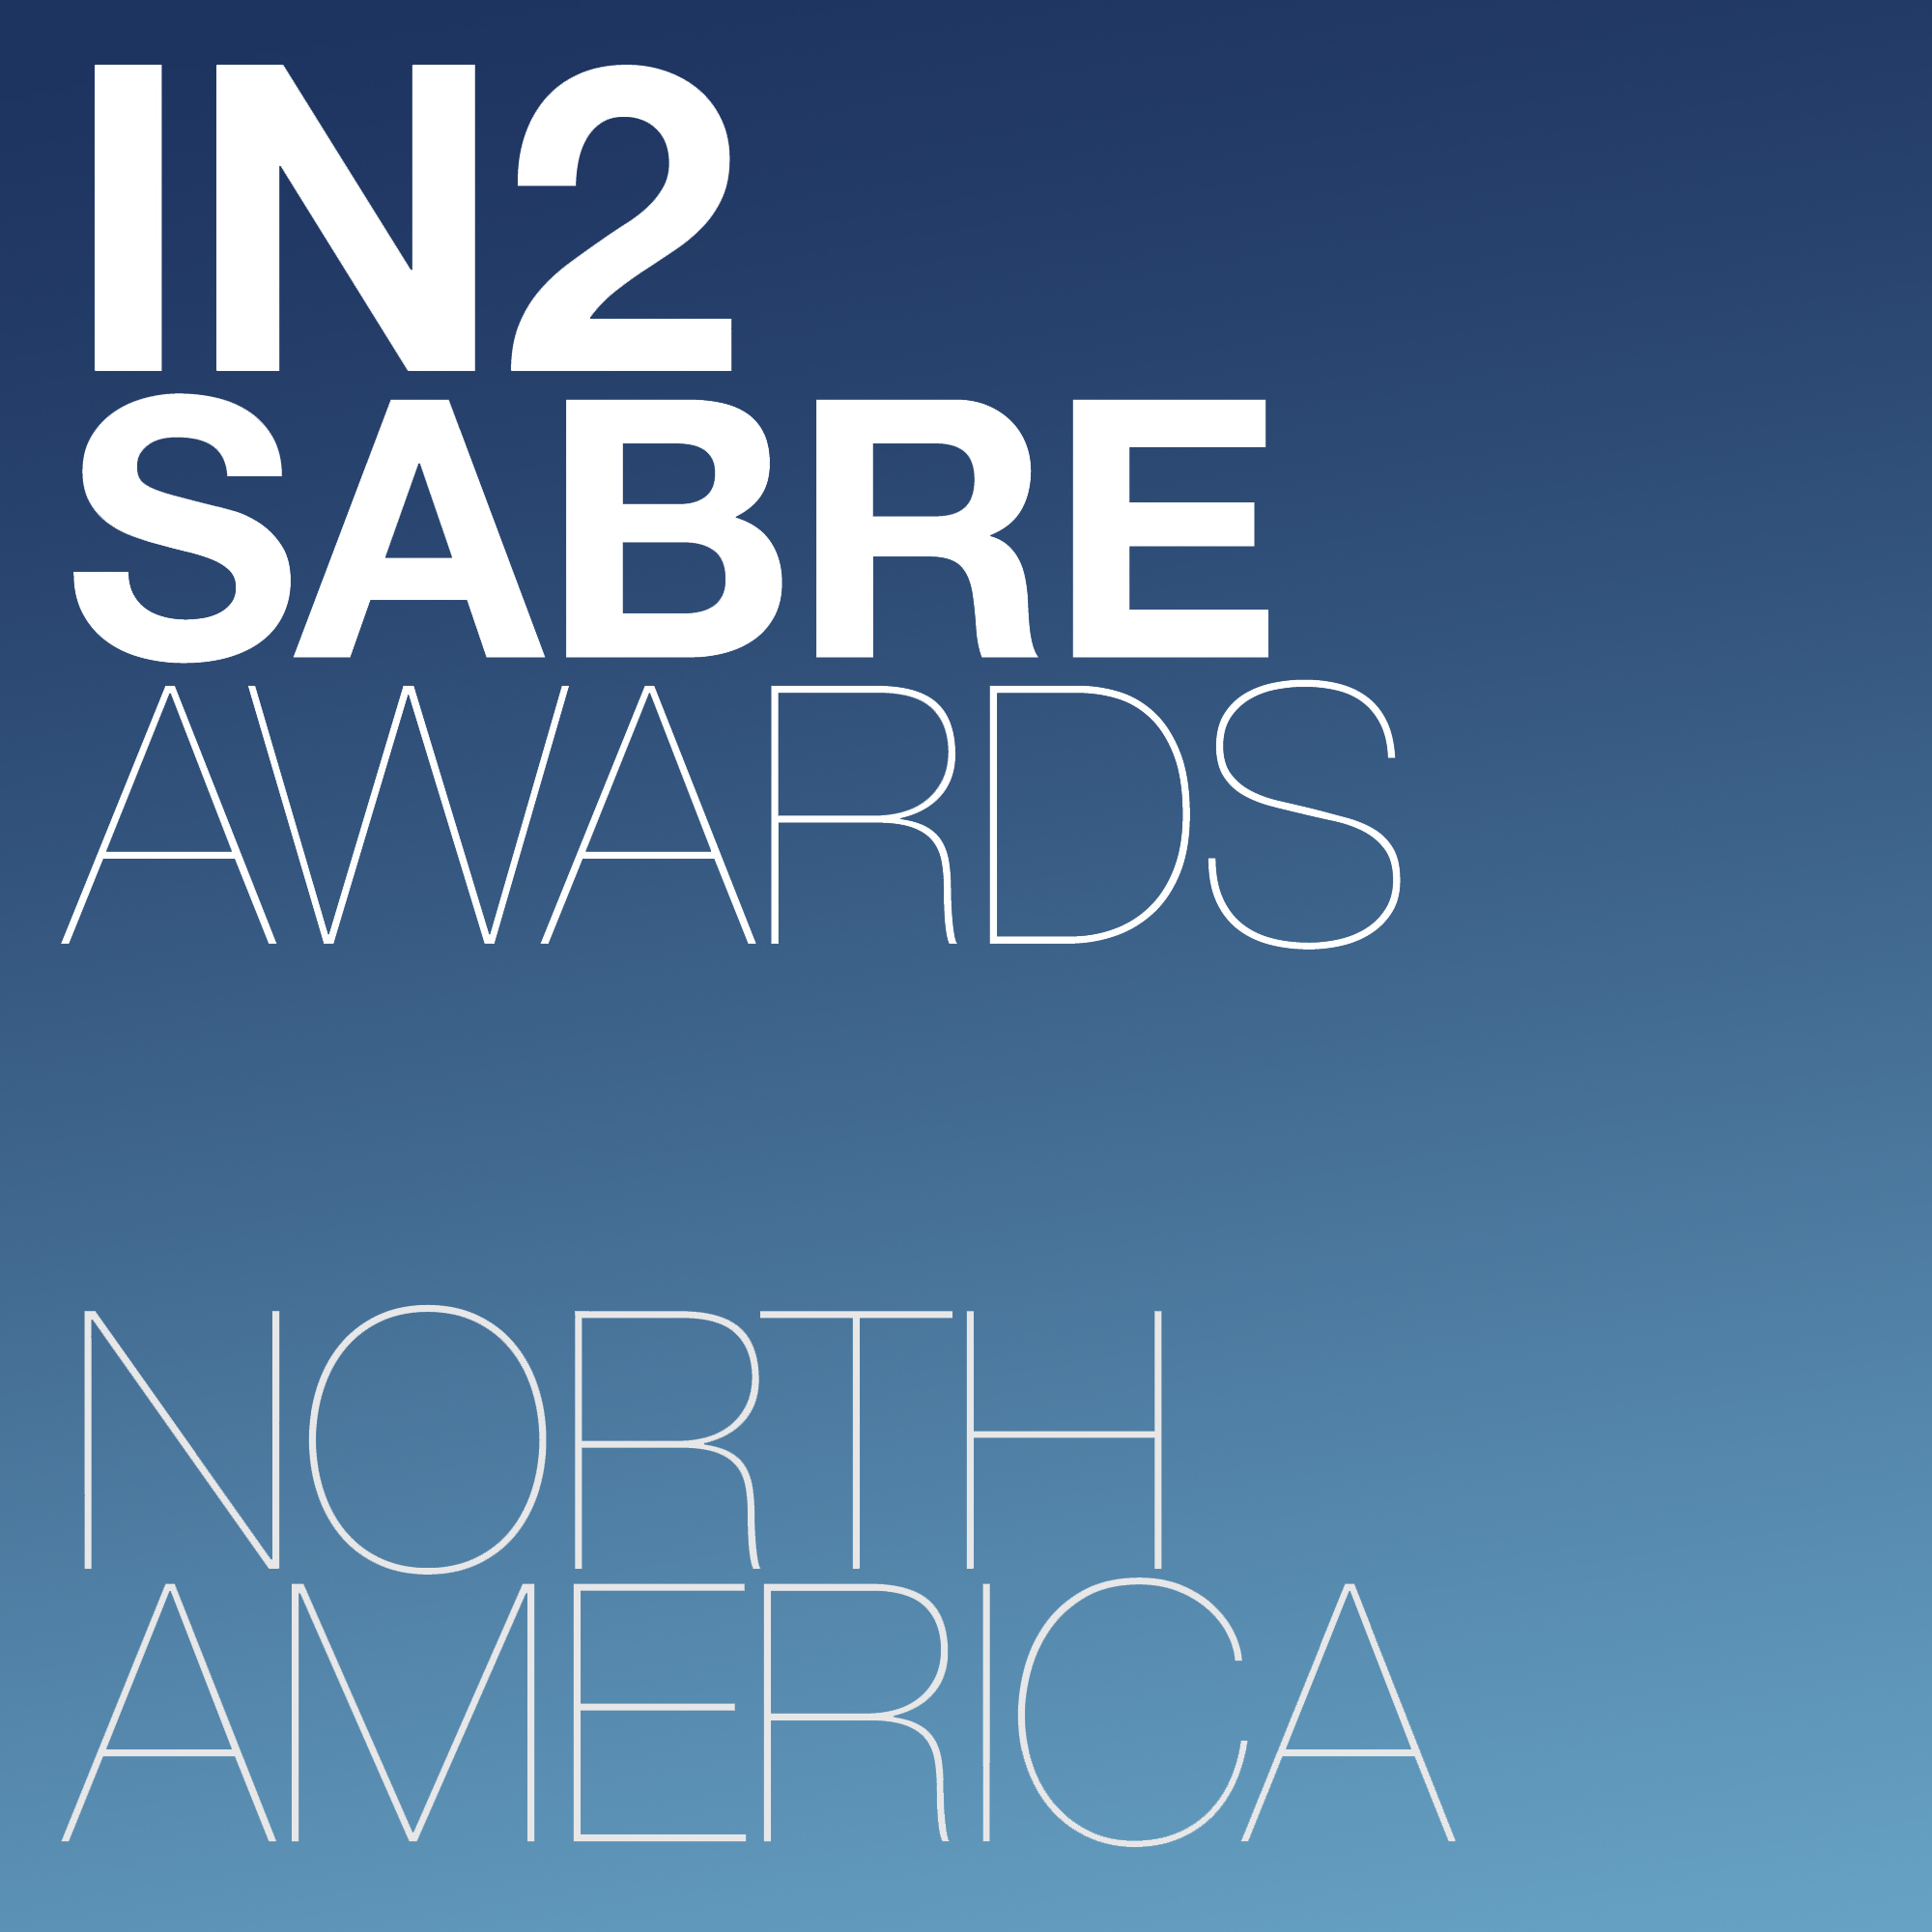 Innovation SABRE Awards